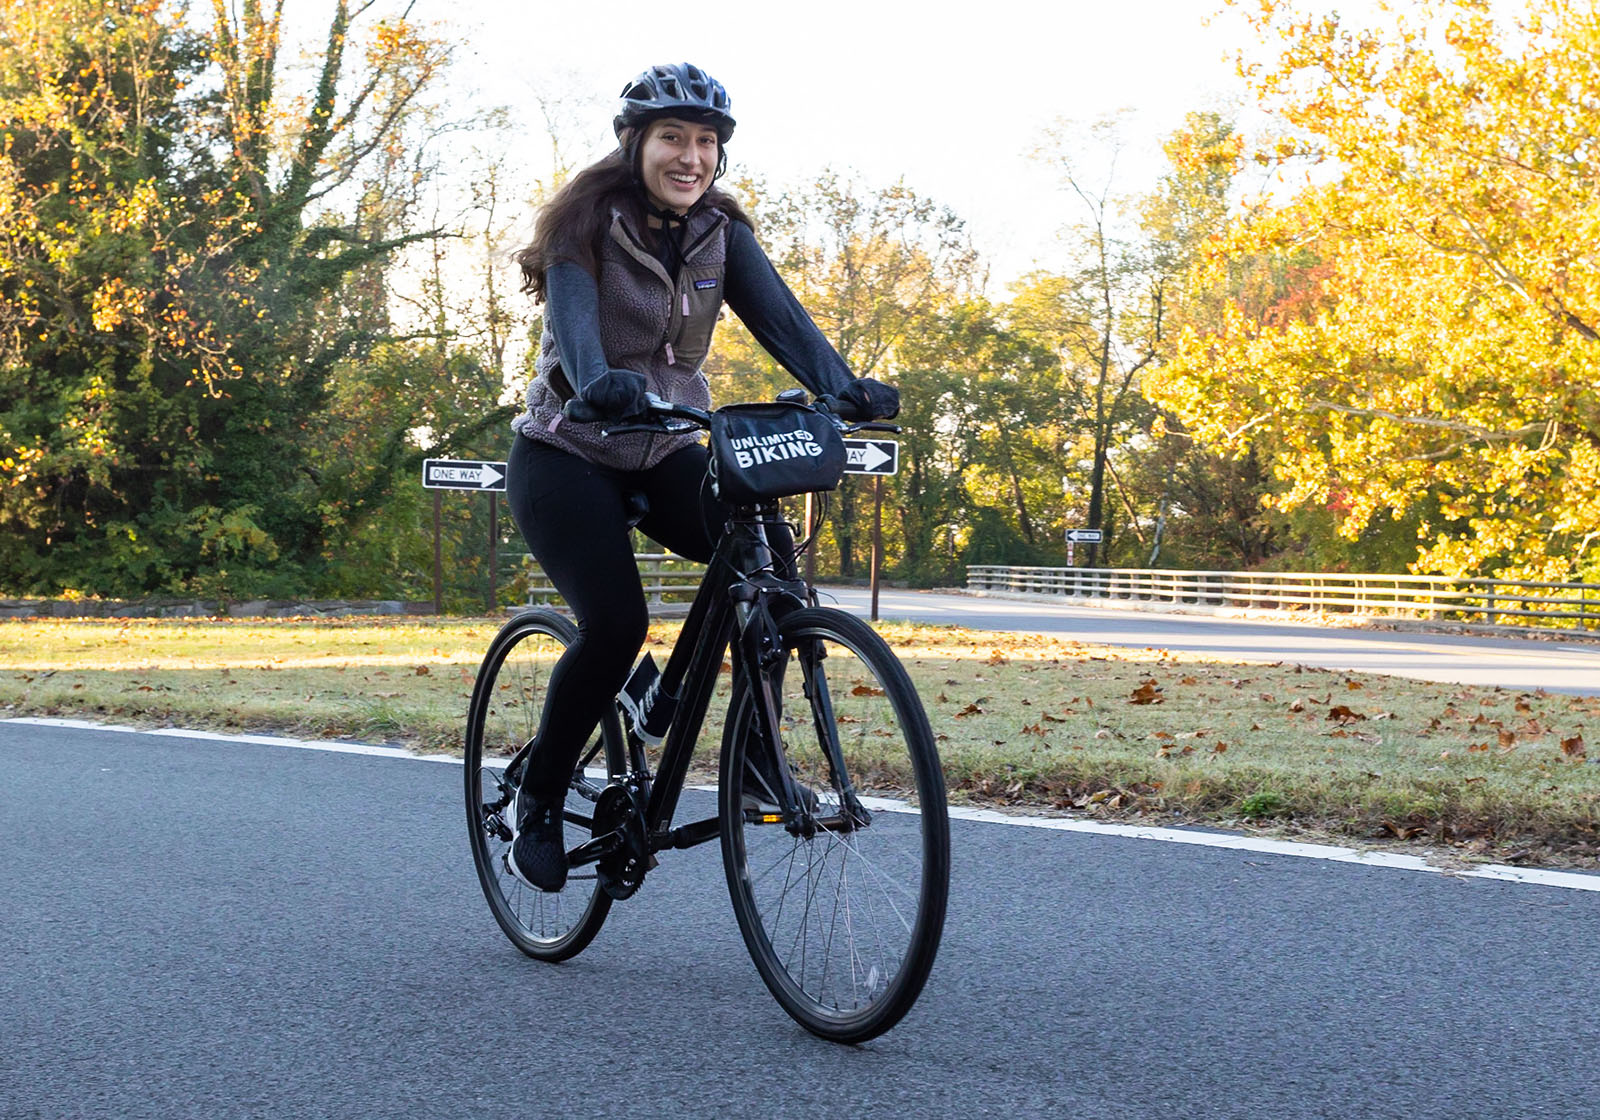 BellRinger rider on her bike on scenic road